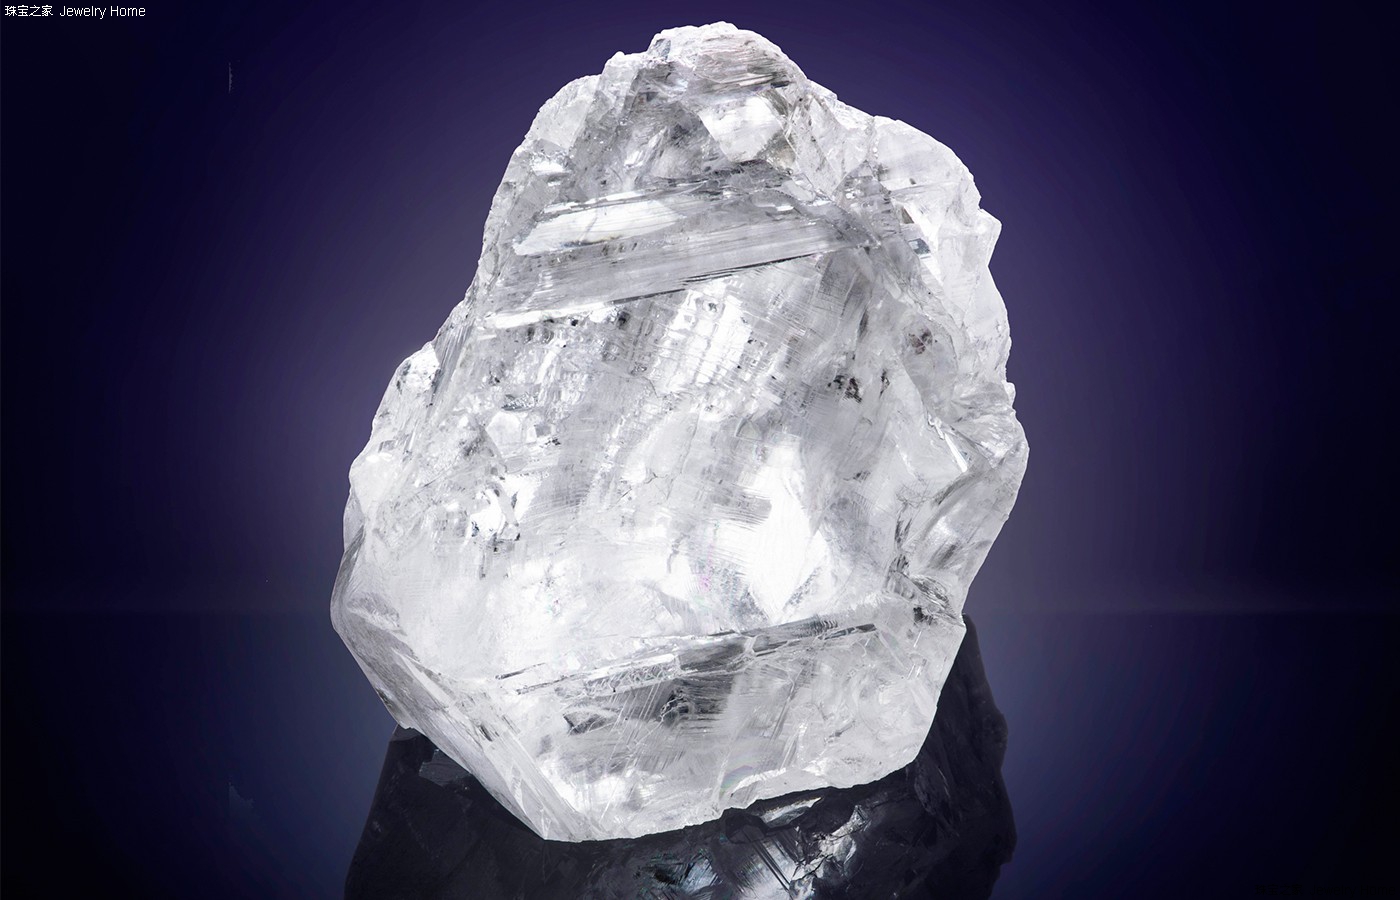 『珠宝』全球一周：北美最大宝石级钻石原石「Diavik Foxfire」将在华盛顿展出；2016年诺贝尔和平奖奖章将由「公平采矿」黄金制作 | iDaily Jewelry · 每日珠宝杂志